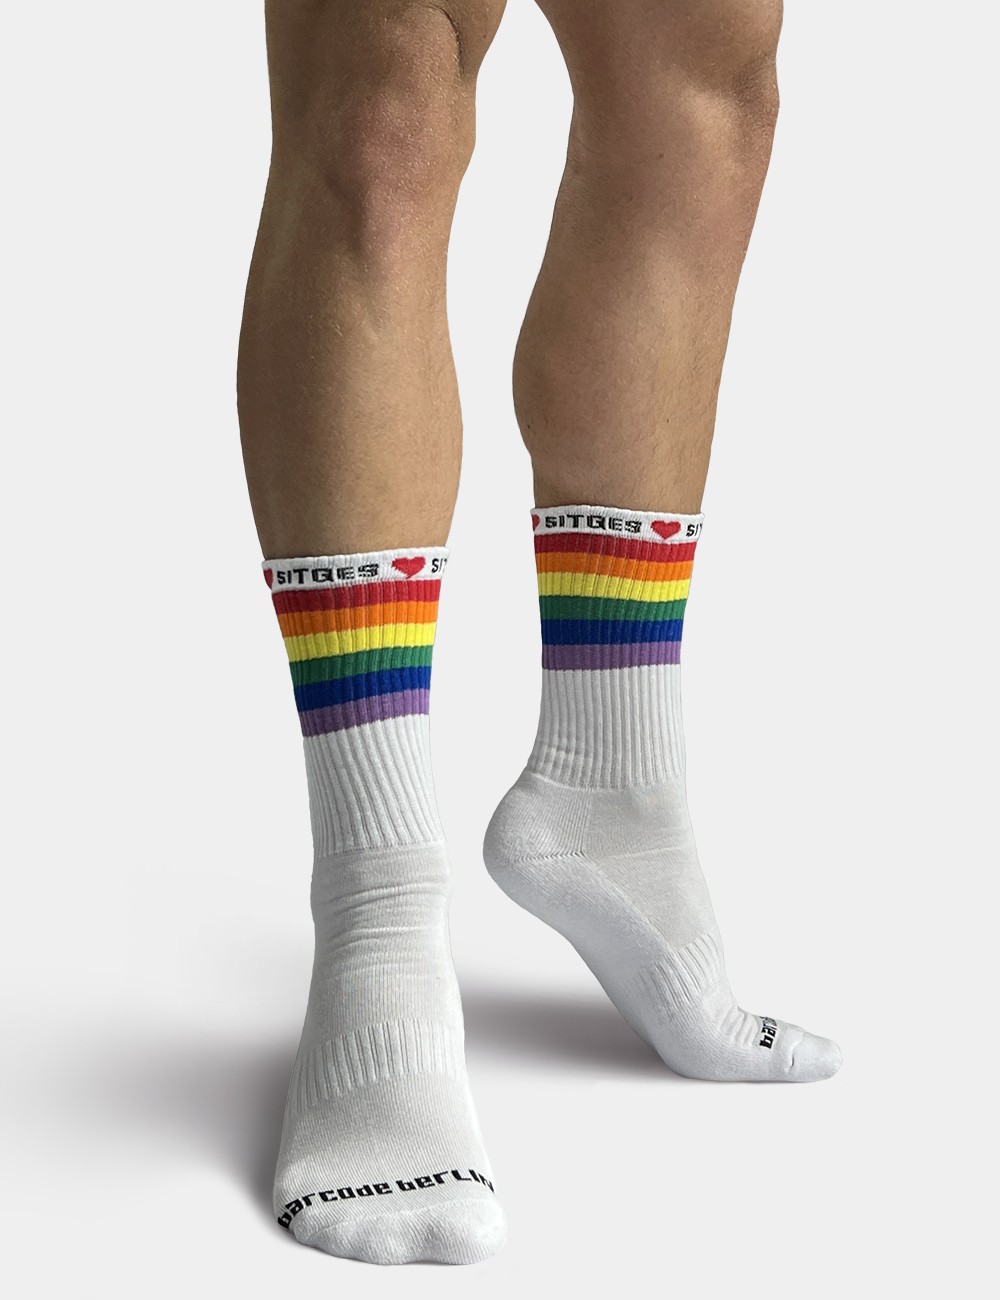 Pride Gym Socks Love Sitges...